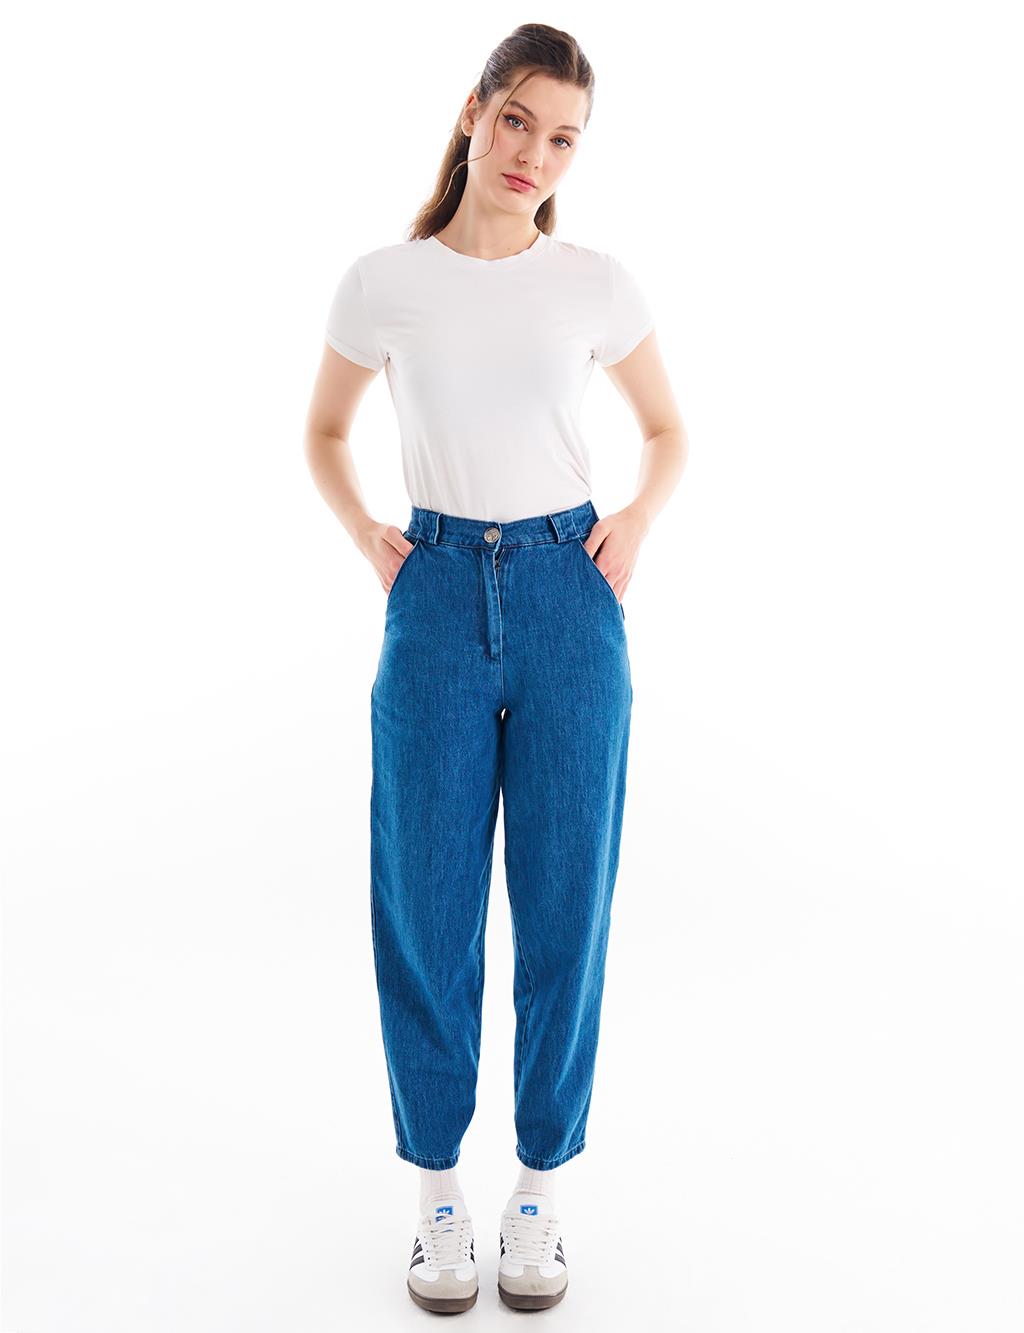 

Джинсовые брюки с эластичной резинкой на талии цвета индиго Kayra